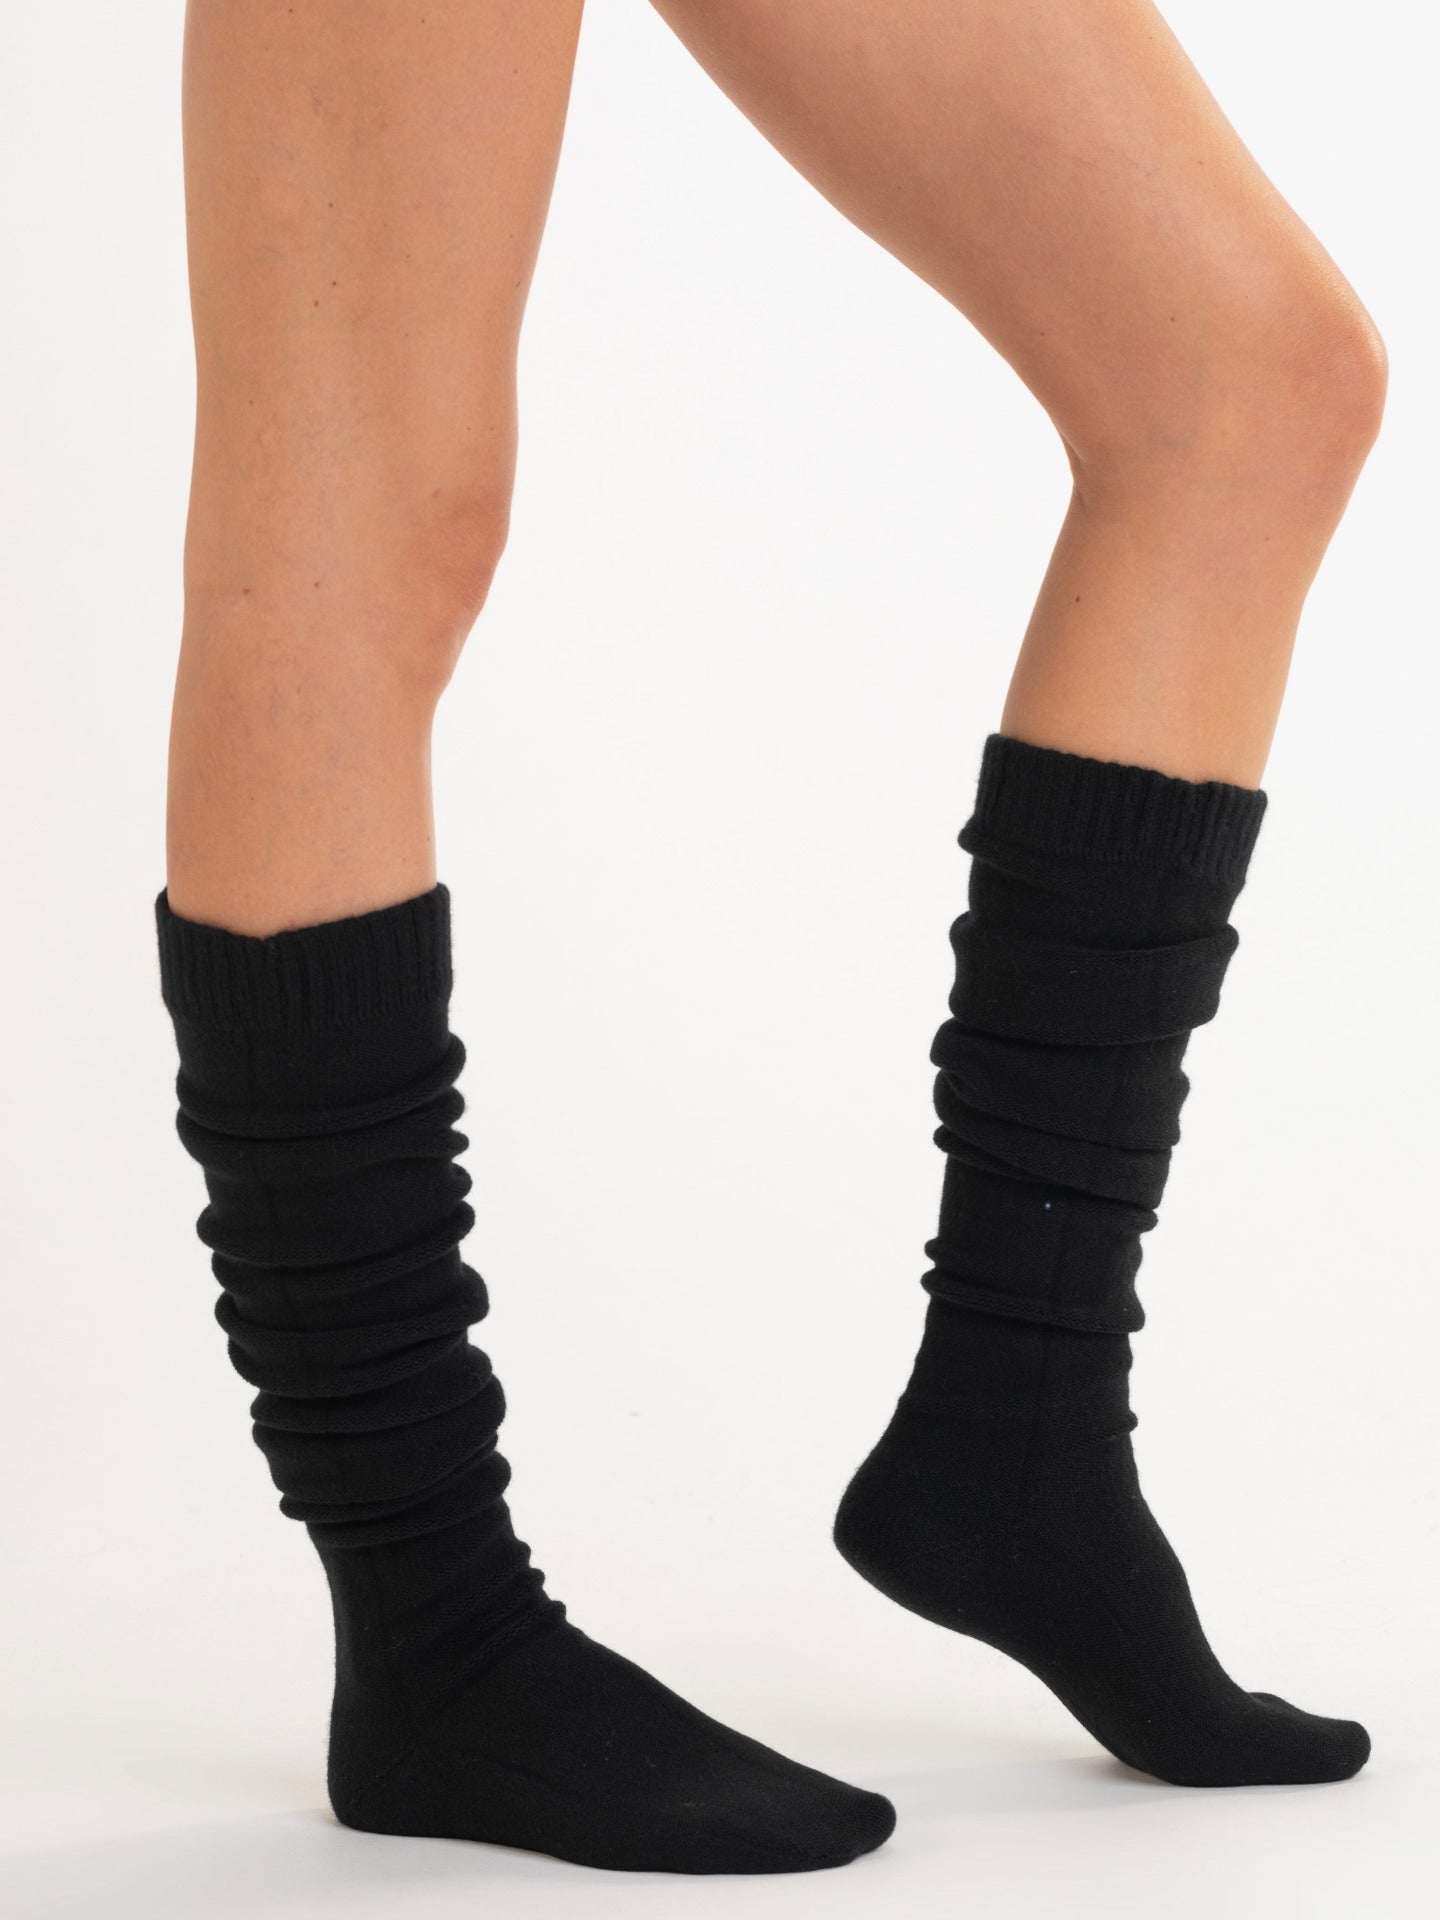 Women's Plain Knitted Long Socks Black - Gobi Cashmere